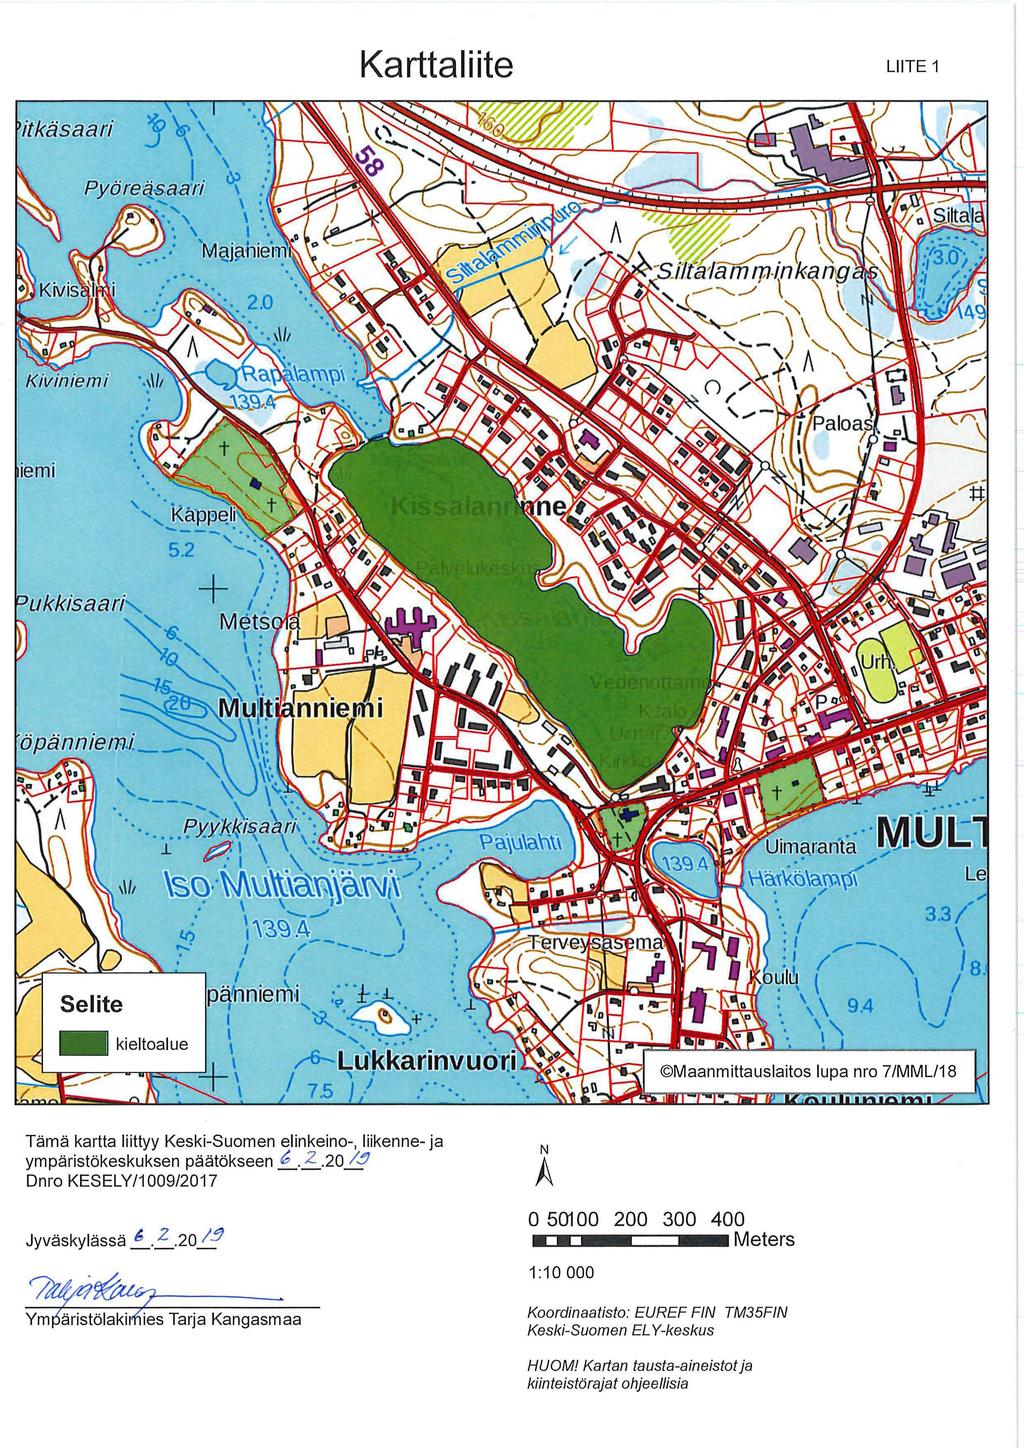 Karttaliite LIITE 1 itkäsaari iemi ukkisaari 3.3/' \ I I a. \ / \..J... Tämä kartta liittyy Keski-Suomen elinkeino-, liikenne- ja ympäristökeskuksen päätökseen b. Z.20 l.